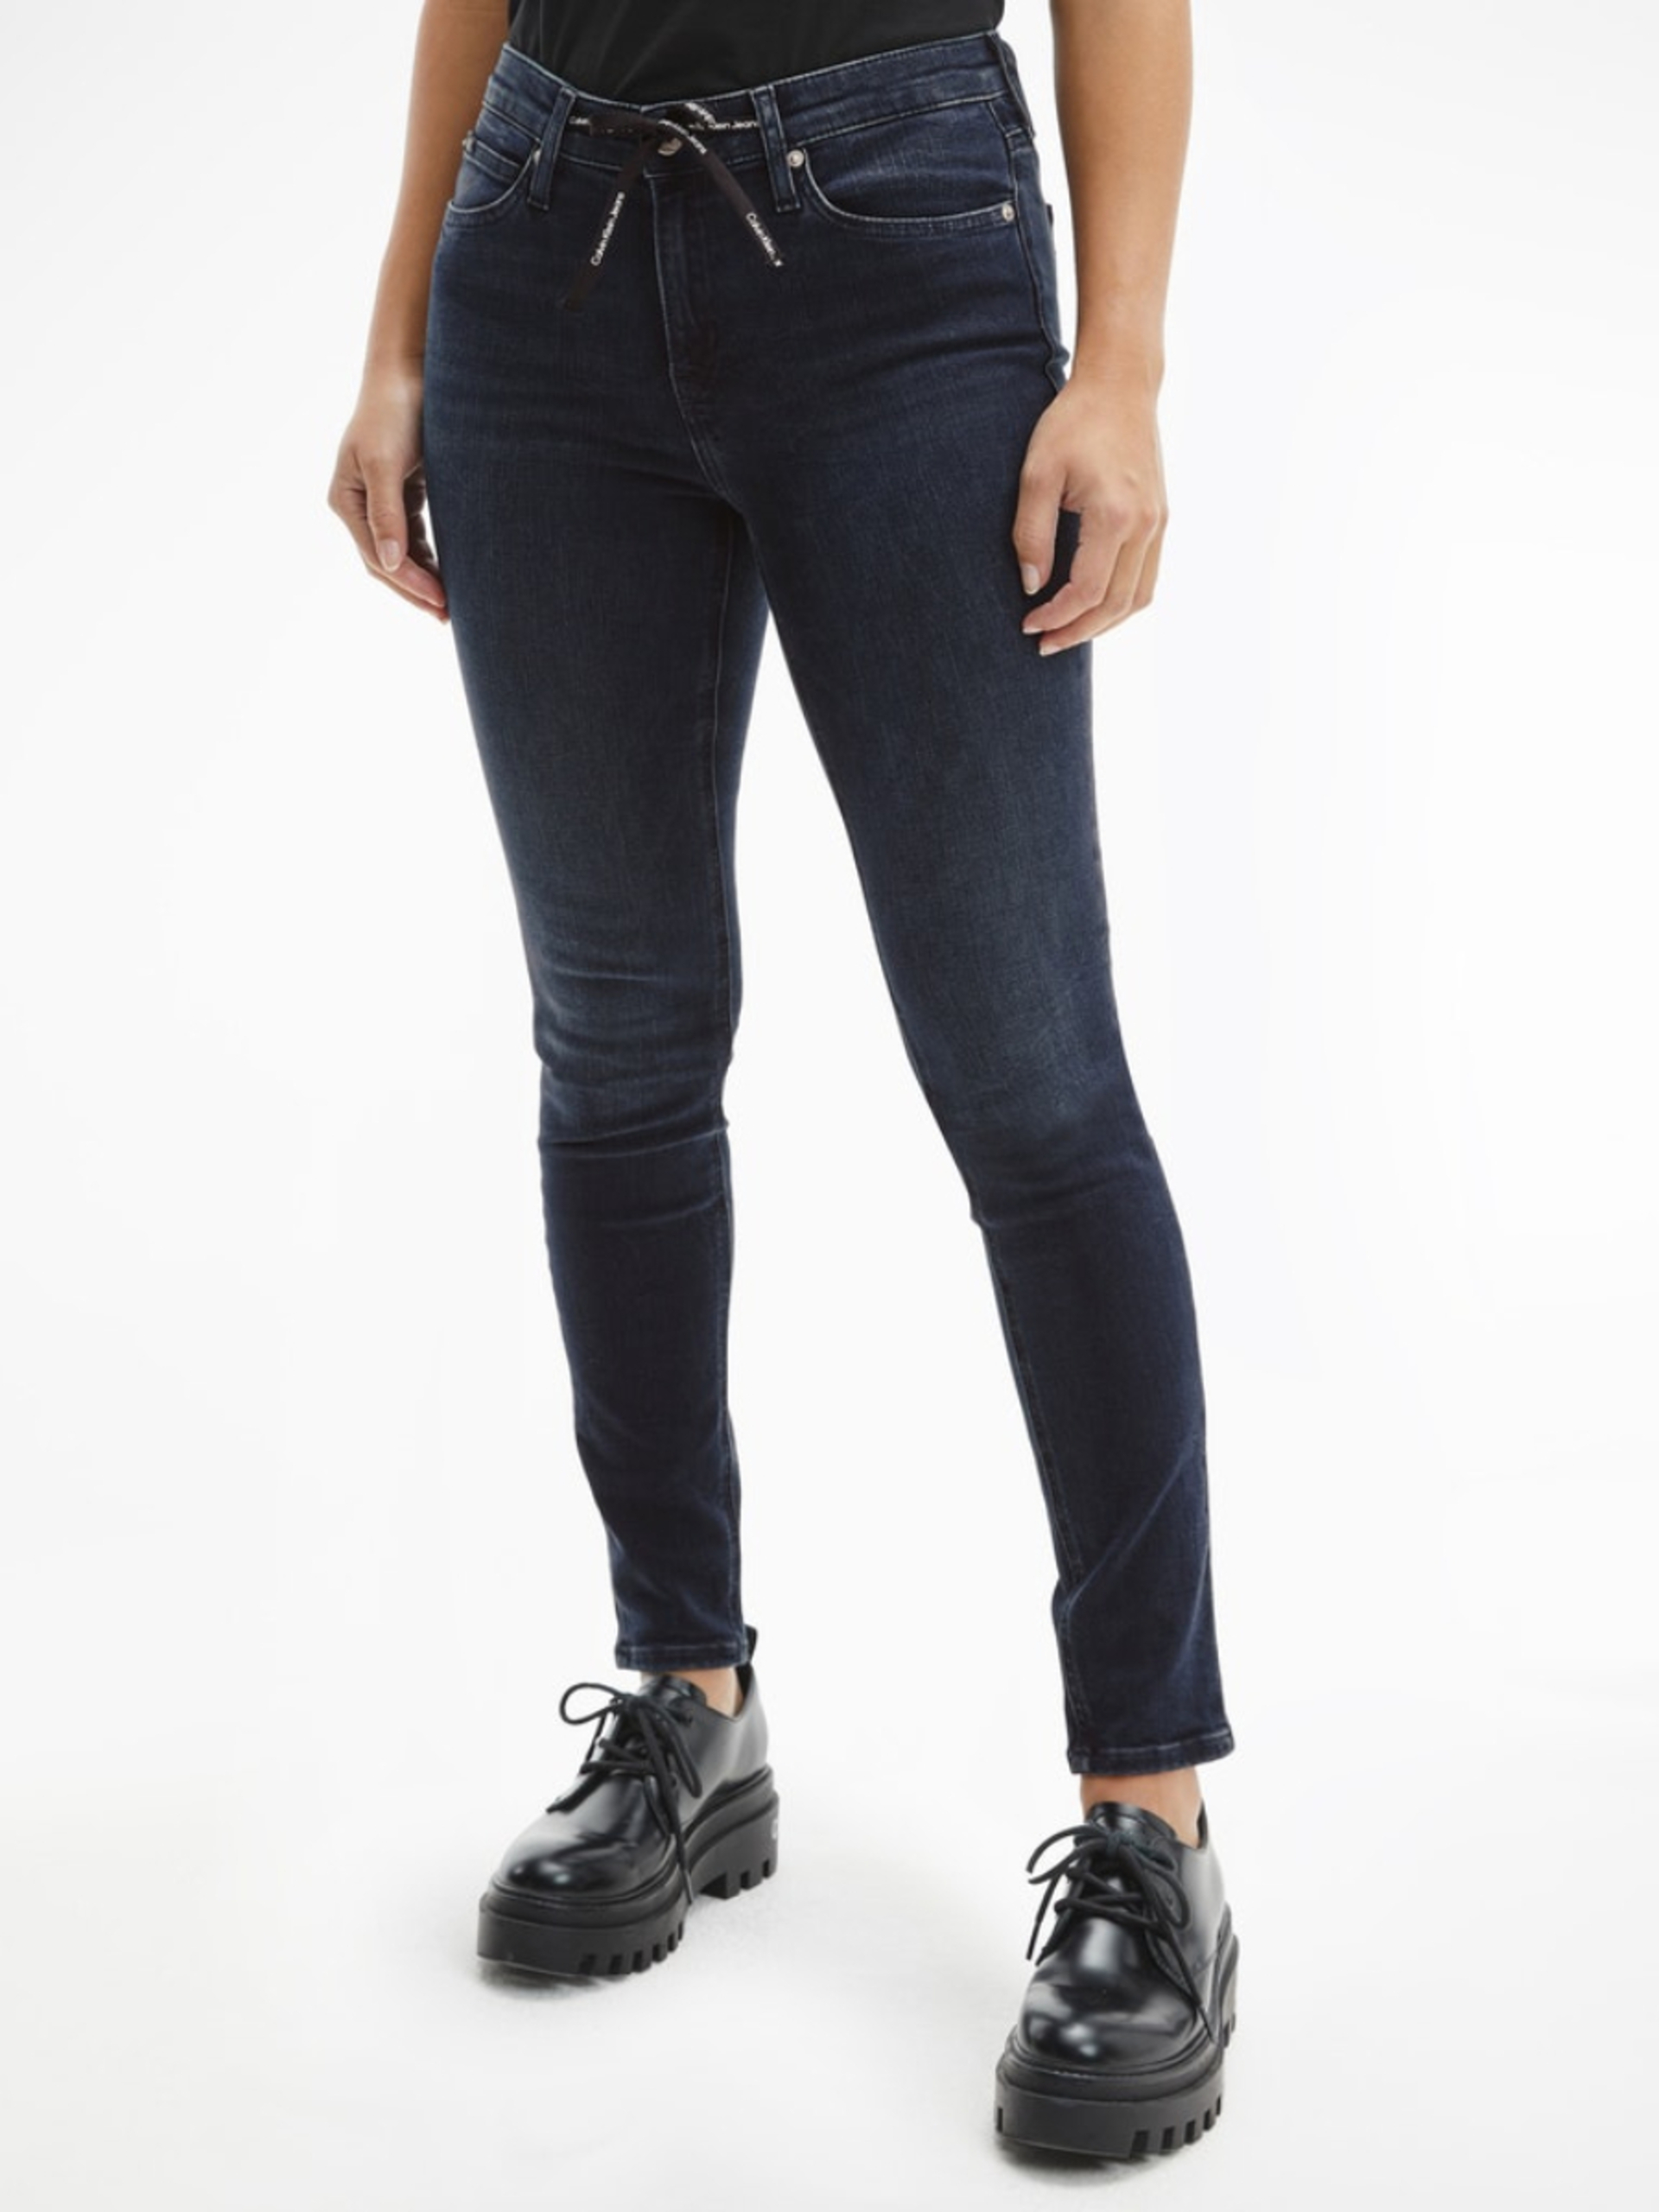 Calvin Klein dámské tmavě modré džíny - 28/30 (1BY)